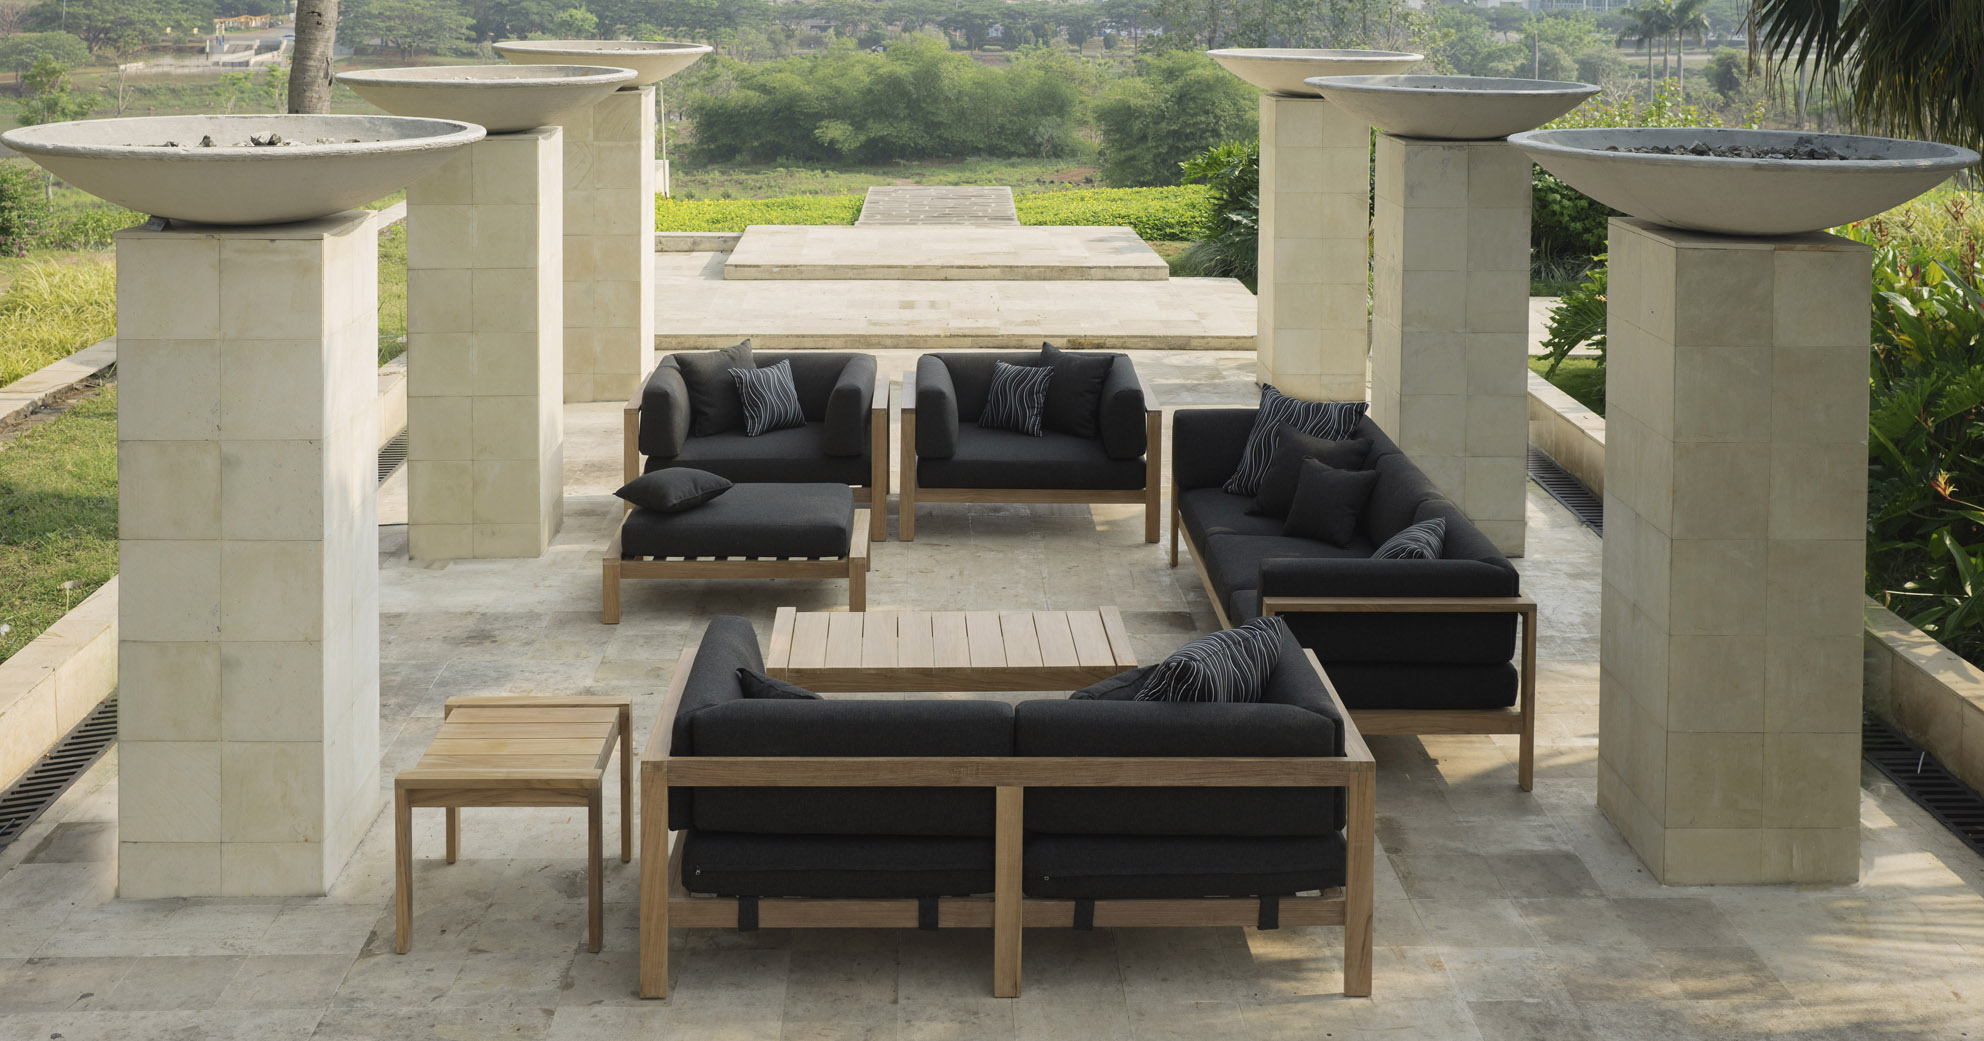 Play Modern Teak Garden Furniture By WildSpirit Luxury Outdoor Furniture